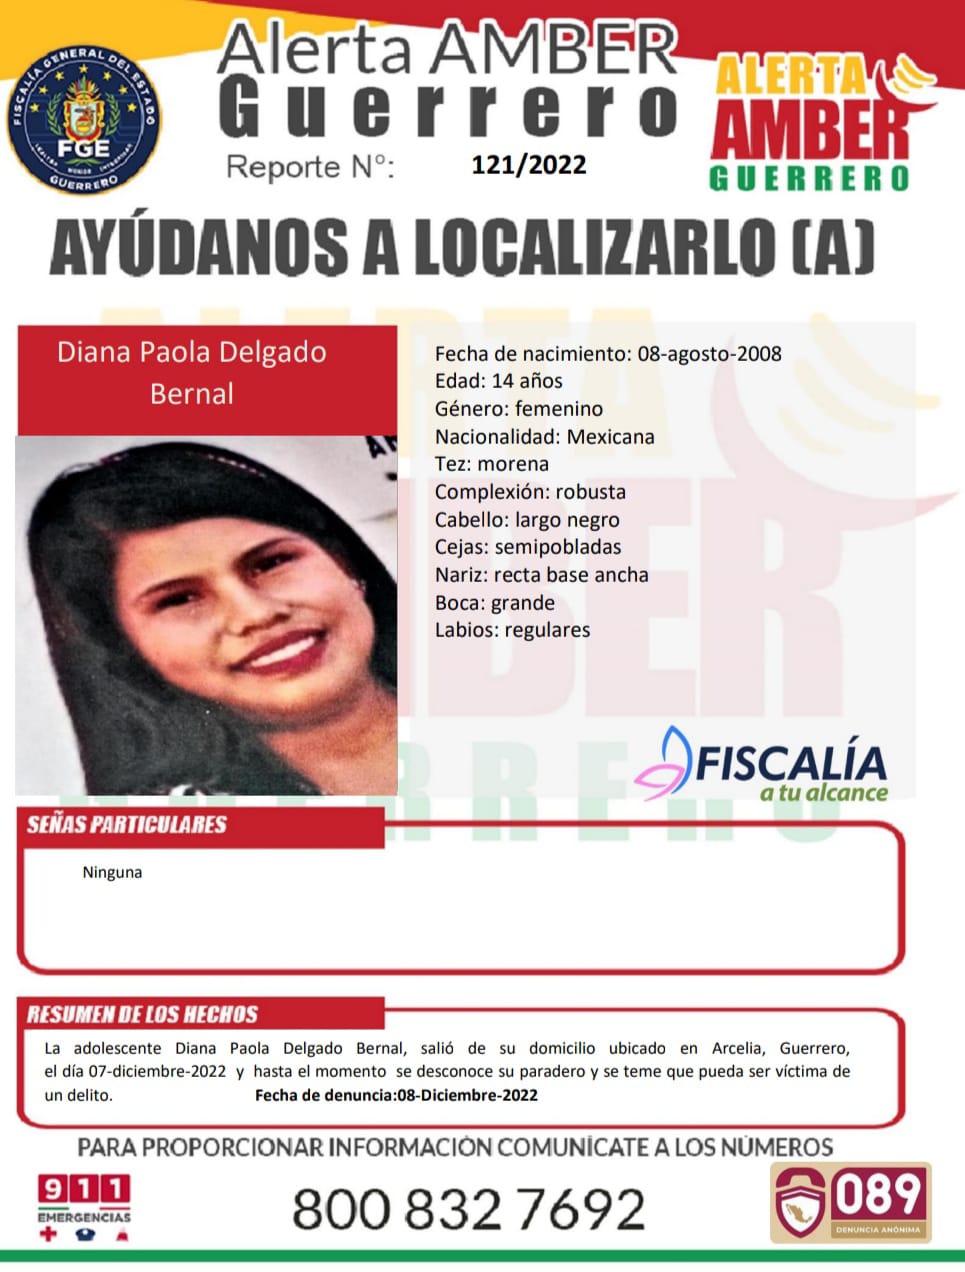 Fiscalía General Del Estado Solicita Su Colaboración Para Localizar A Diana Paola Delgado Bernal.